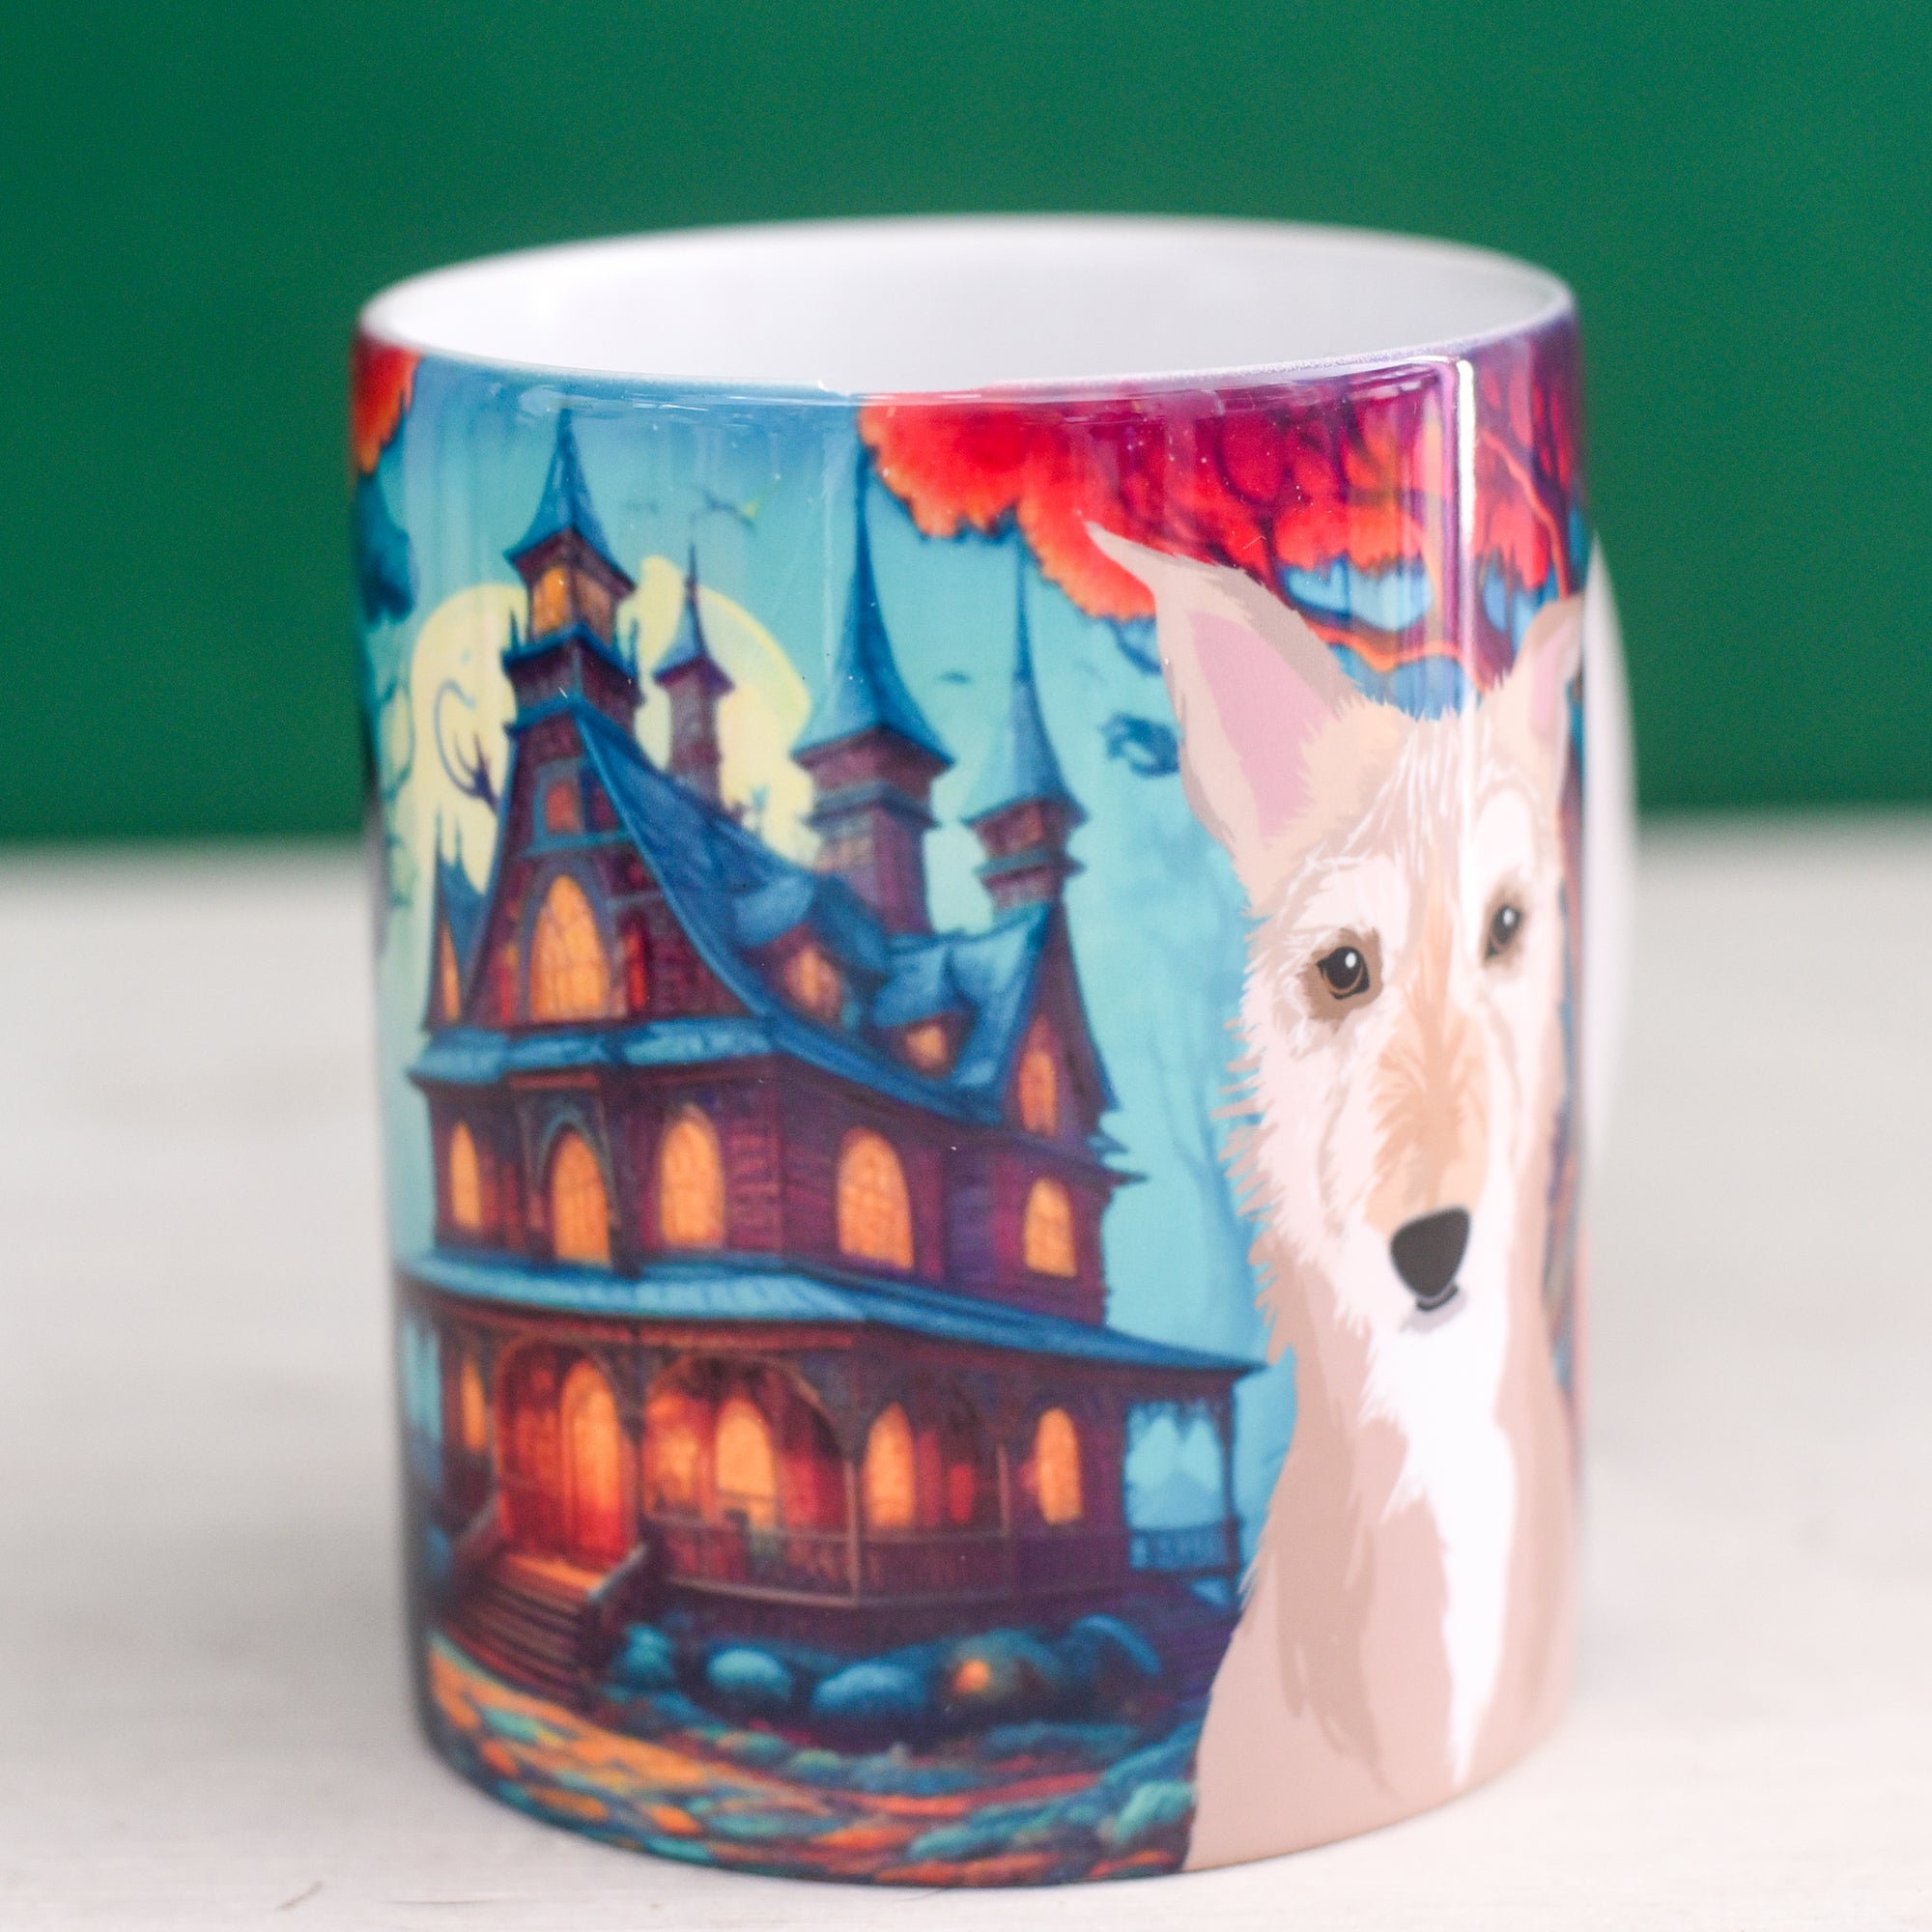 Haunted Mansion Illustrated Dog Mug